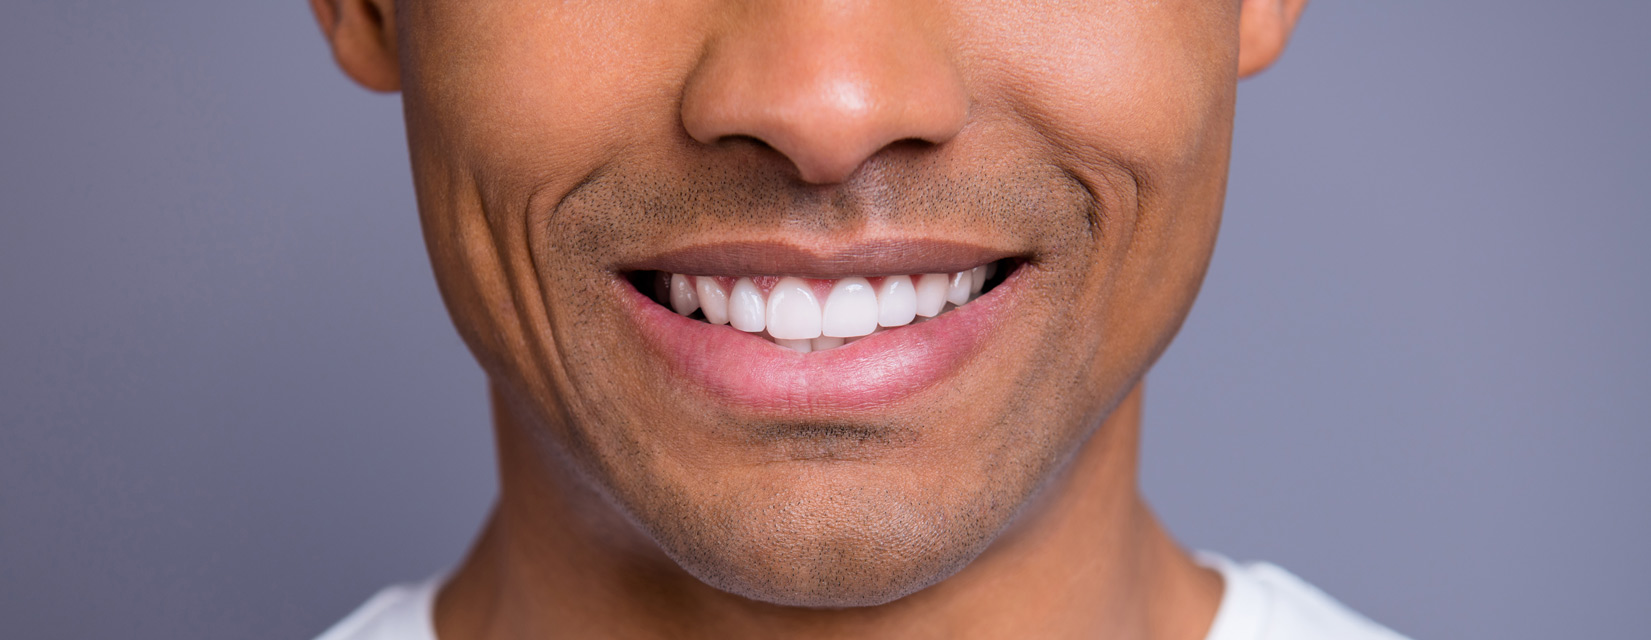 Laser Teeth Whitening vs. Whitening Trays